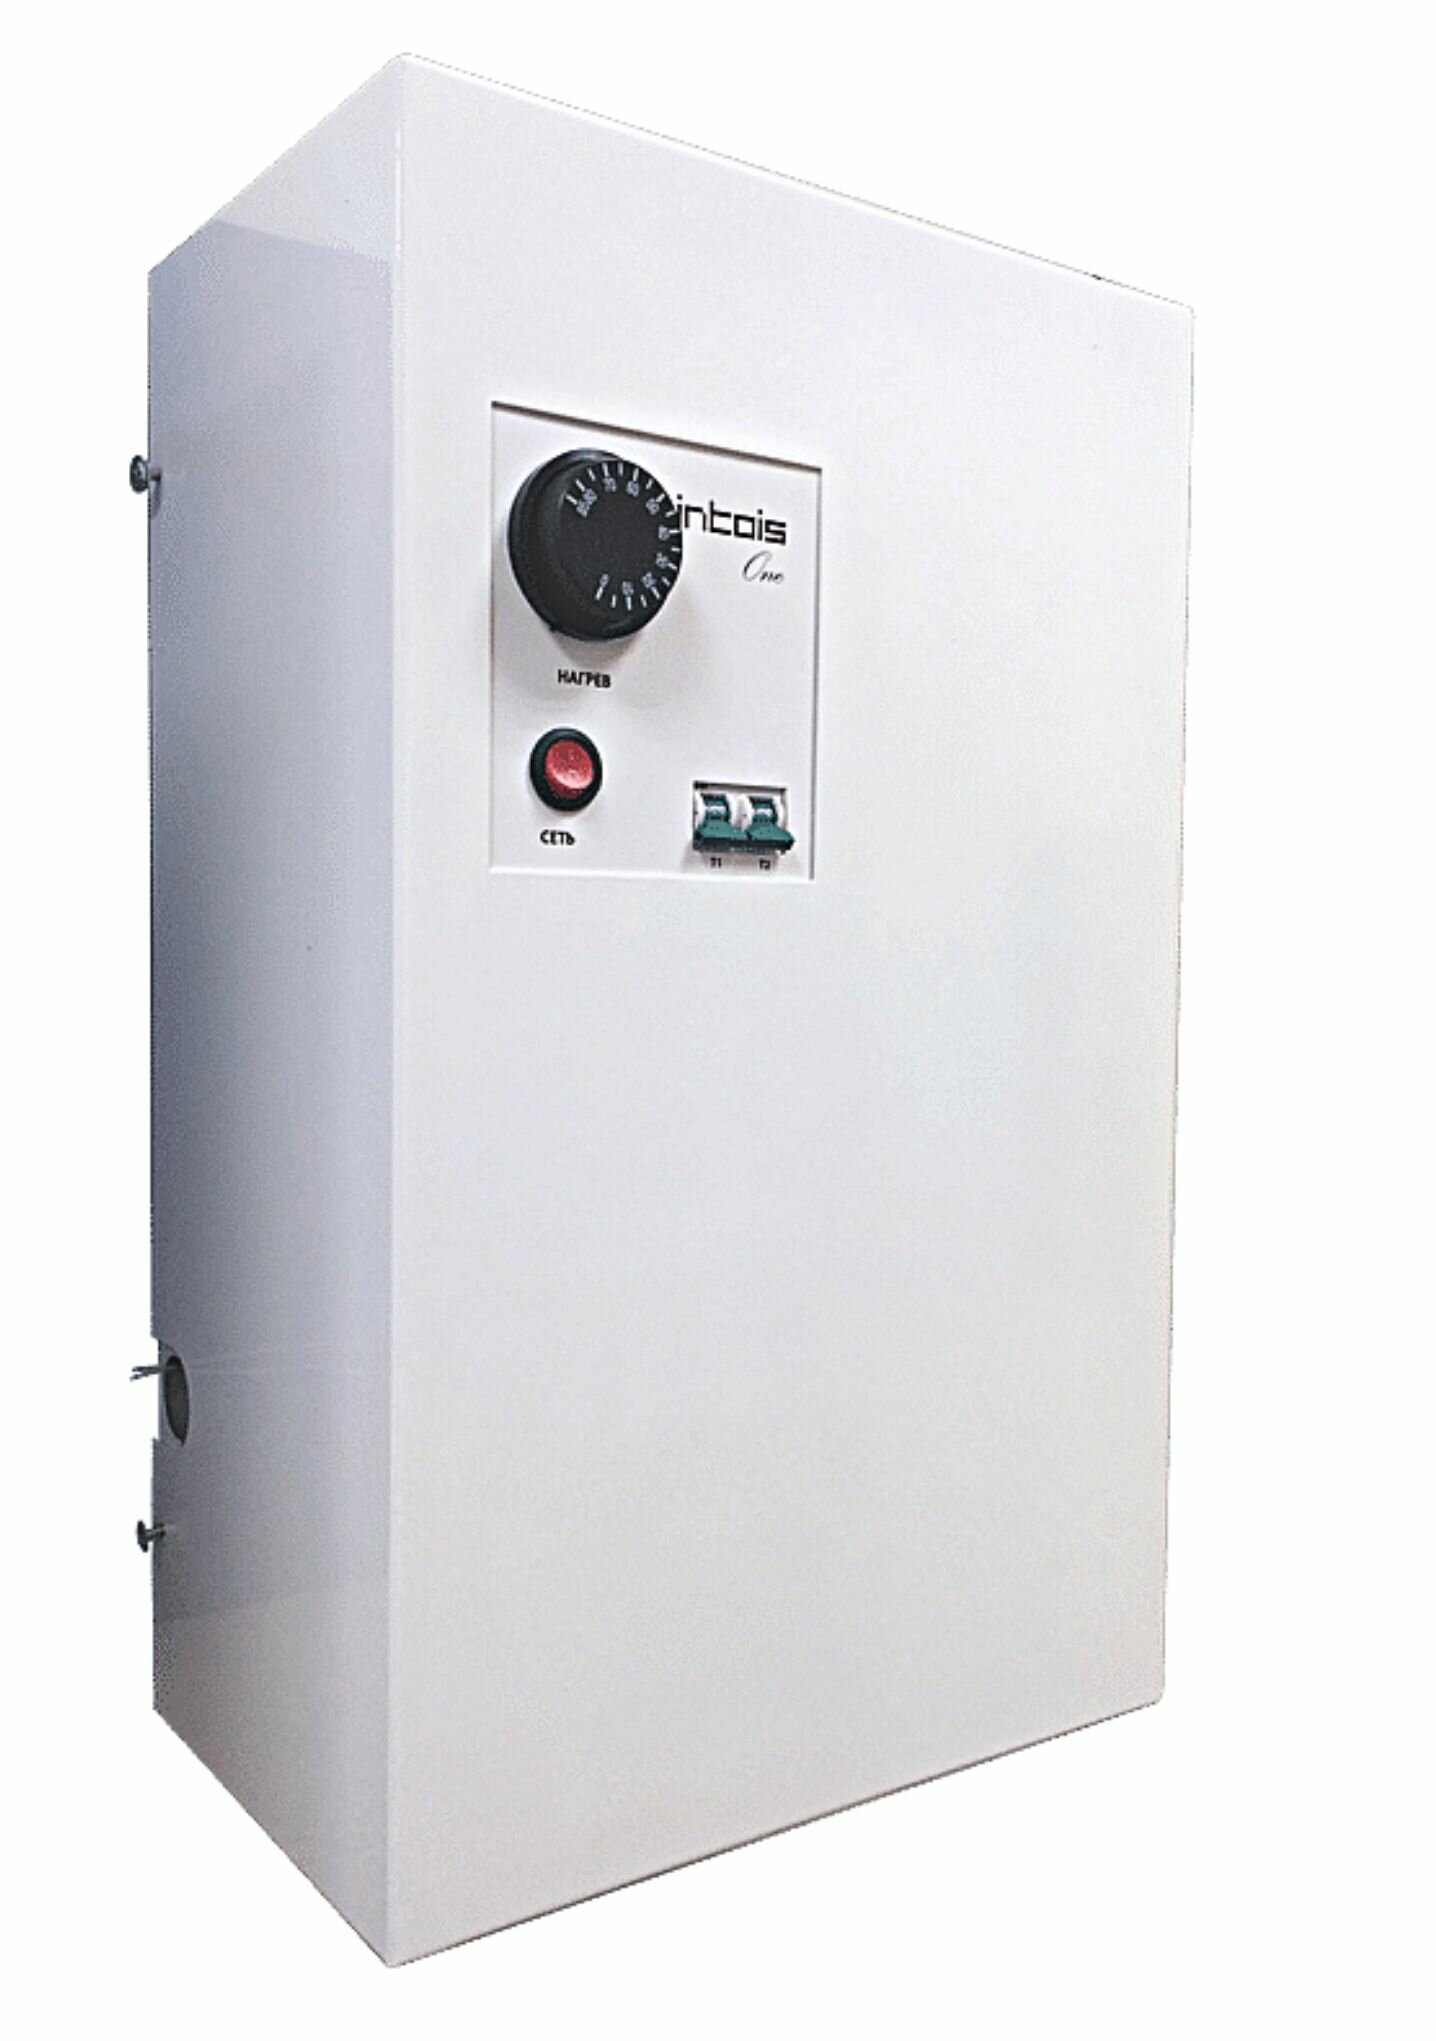 Электрический котел отопления, электрокотел Интоис One МК, 9 кВт, настенный, одноконтурный.